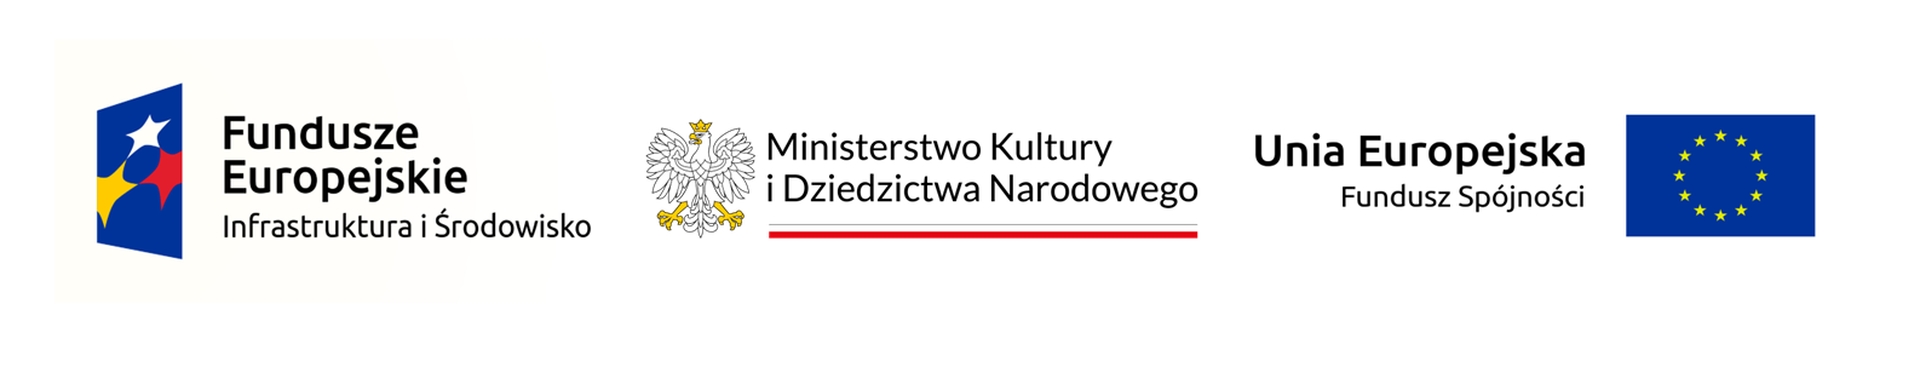 Baner przestawia logo Fundusze Europejskie Infrastruktura i Środowisko, MKiDN, Unia Europejska Fundusz Spójności